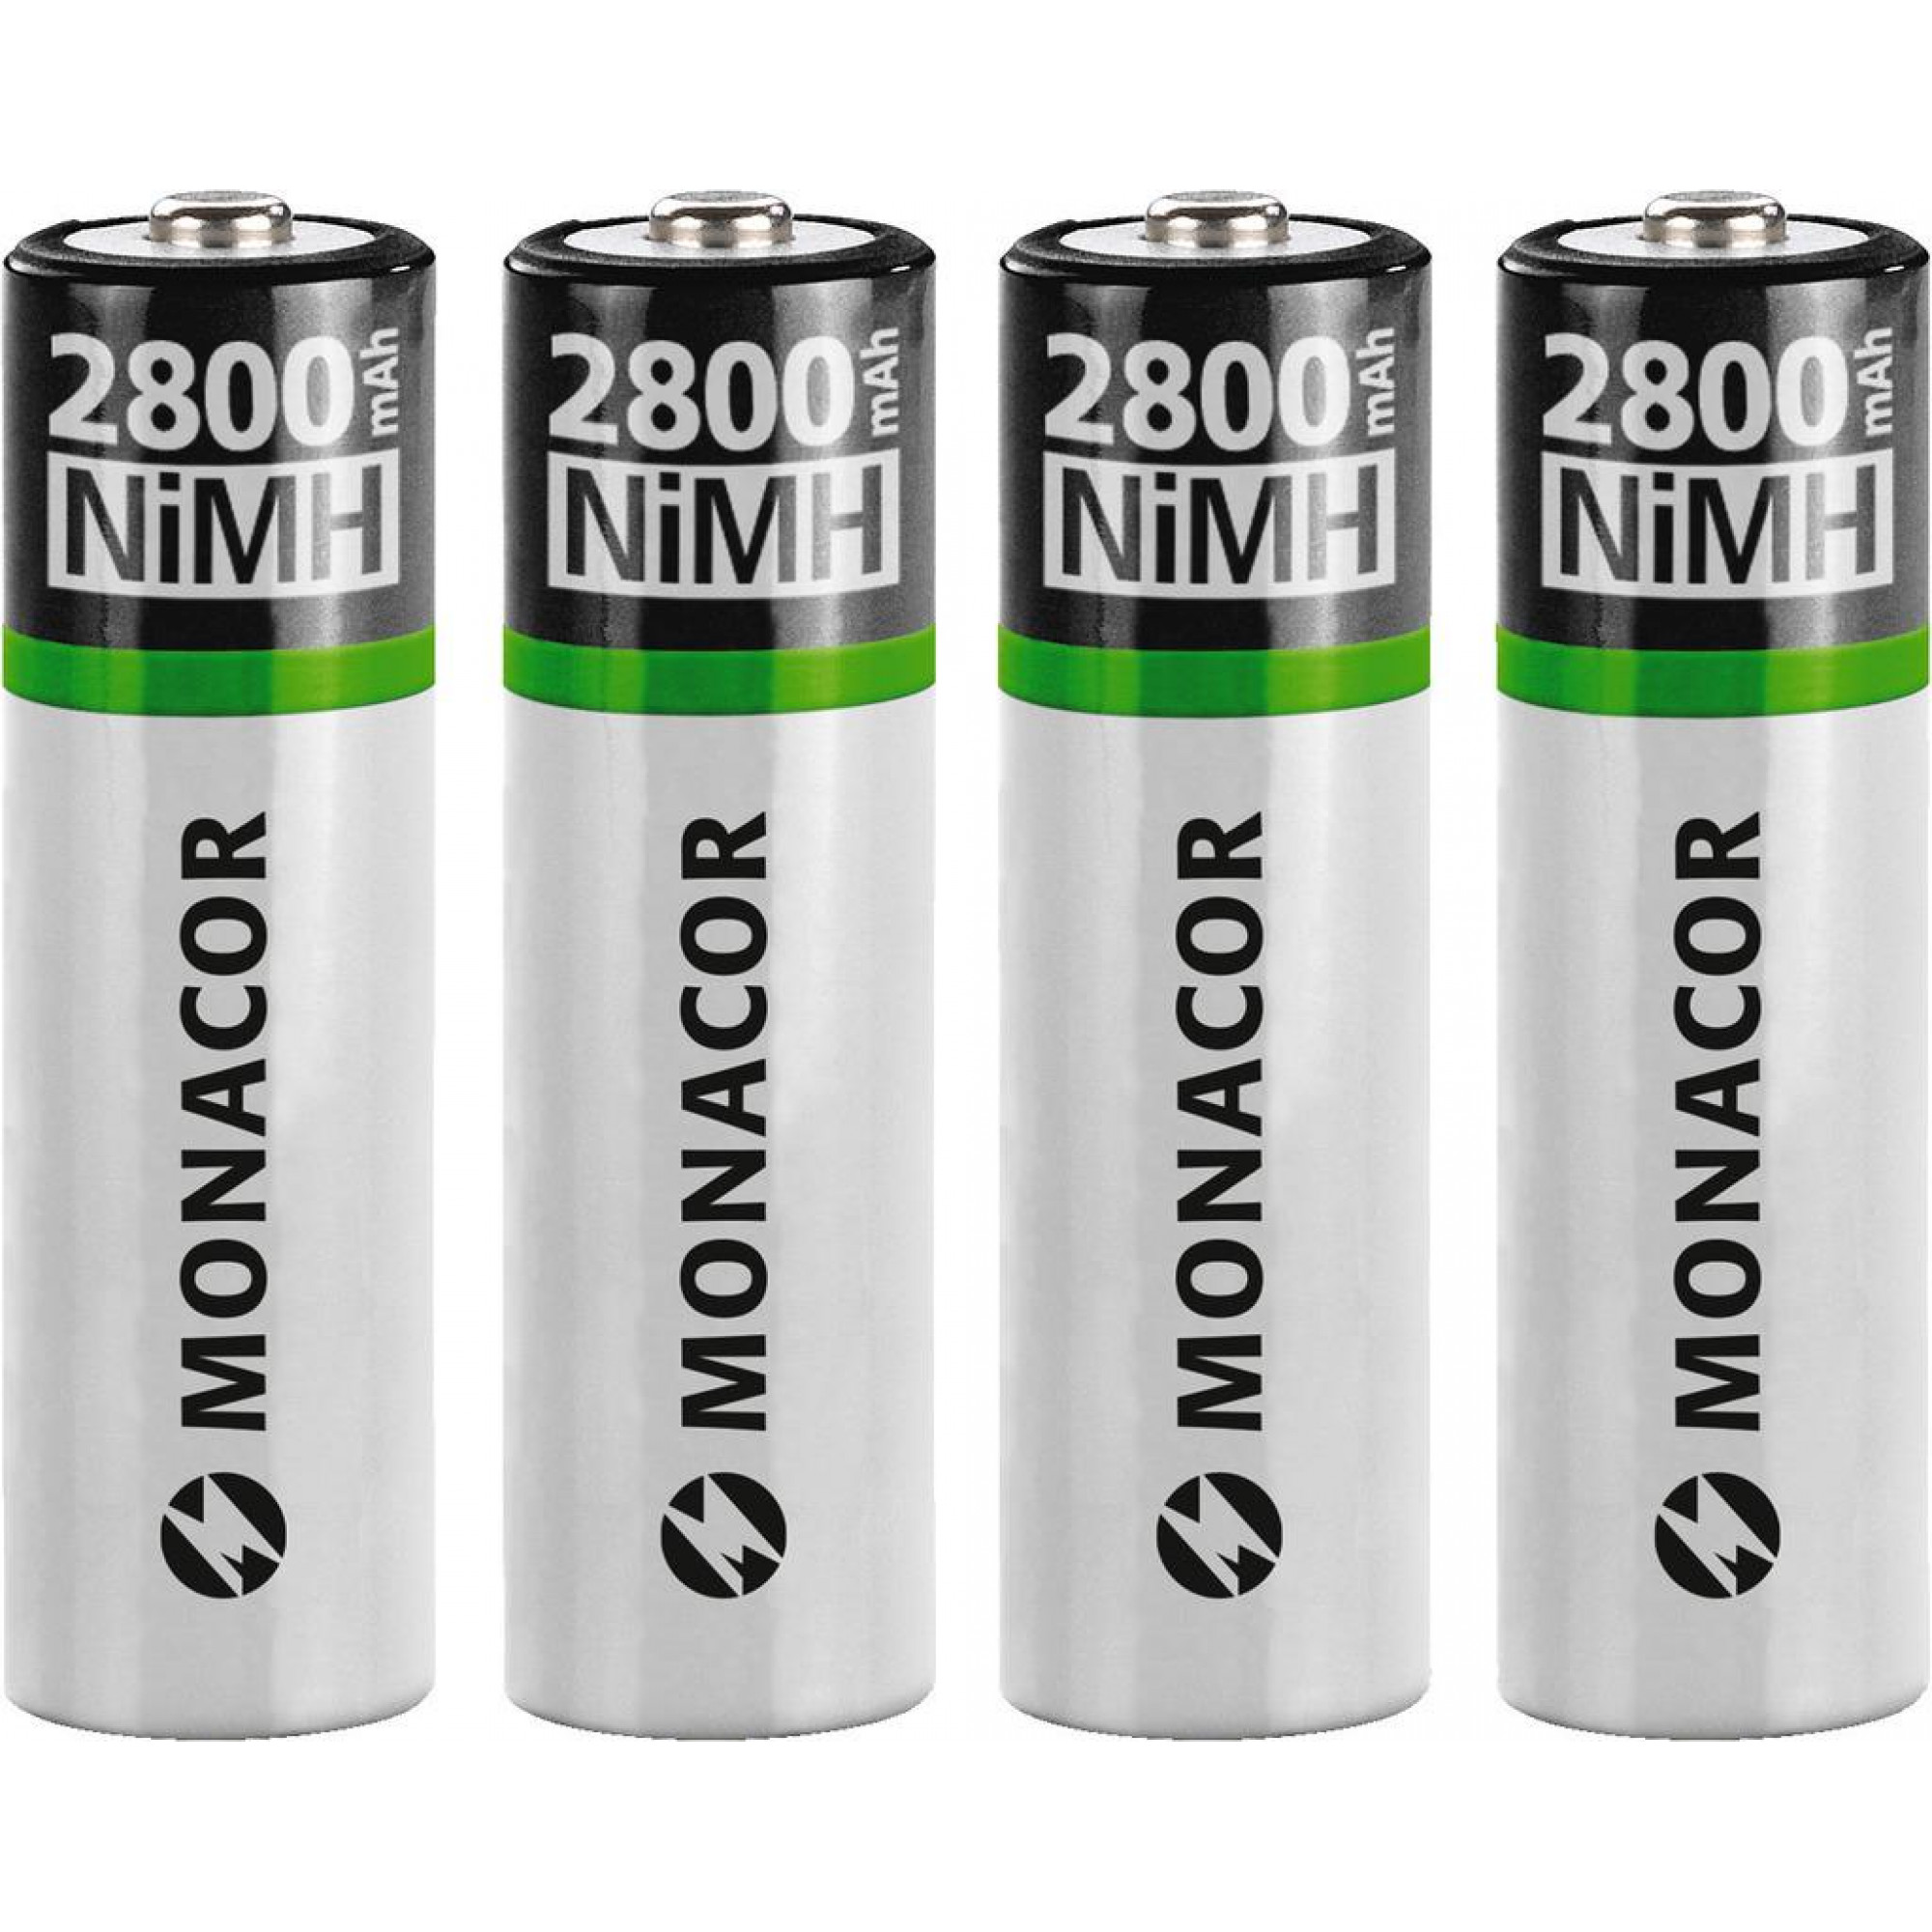 Baterija MONACOR NIMH-2800/4 AA set